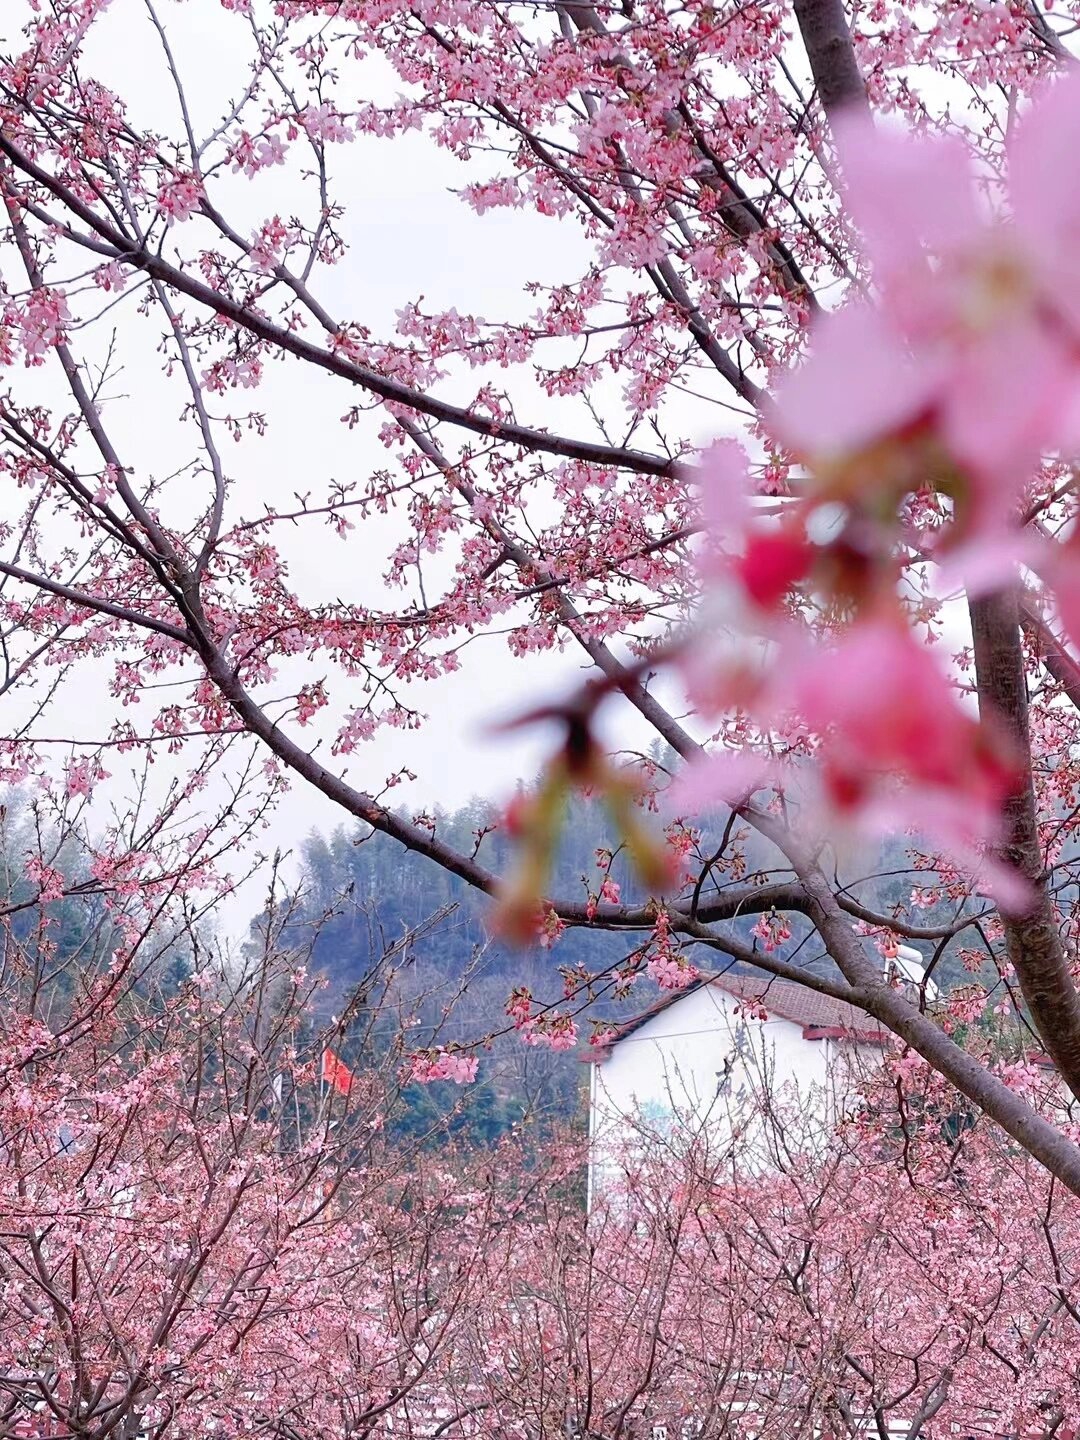 岳阳市最大的樱花园免费开放啦！位置就在云溪区双花村，导航嘉景山庄就能找到。 这个樱花园叫做双清田园综